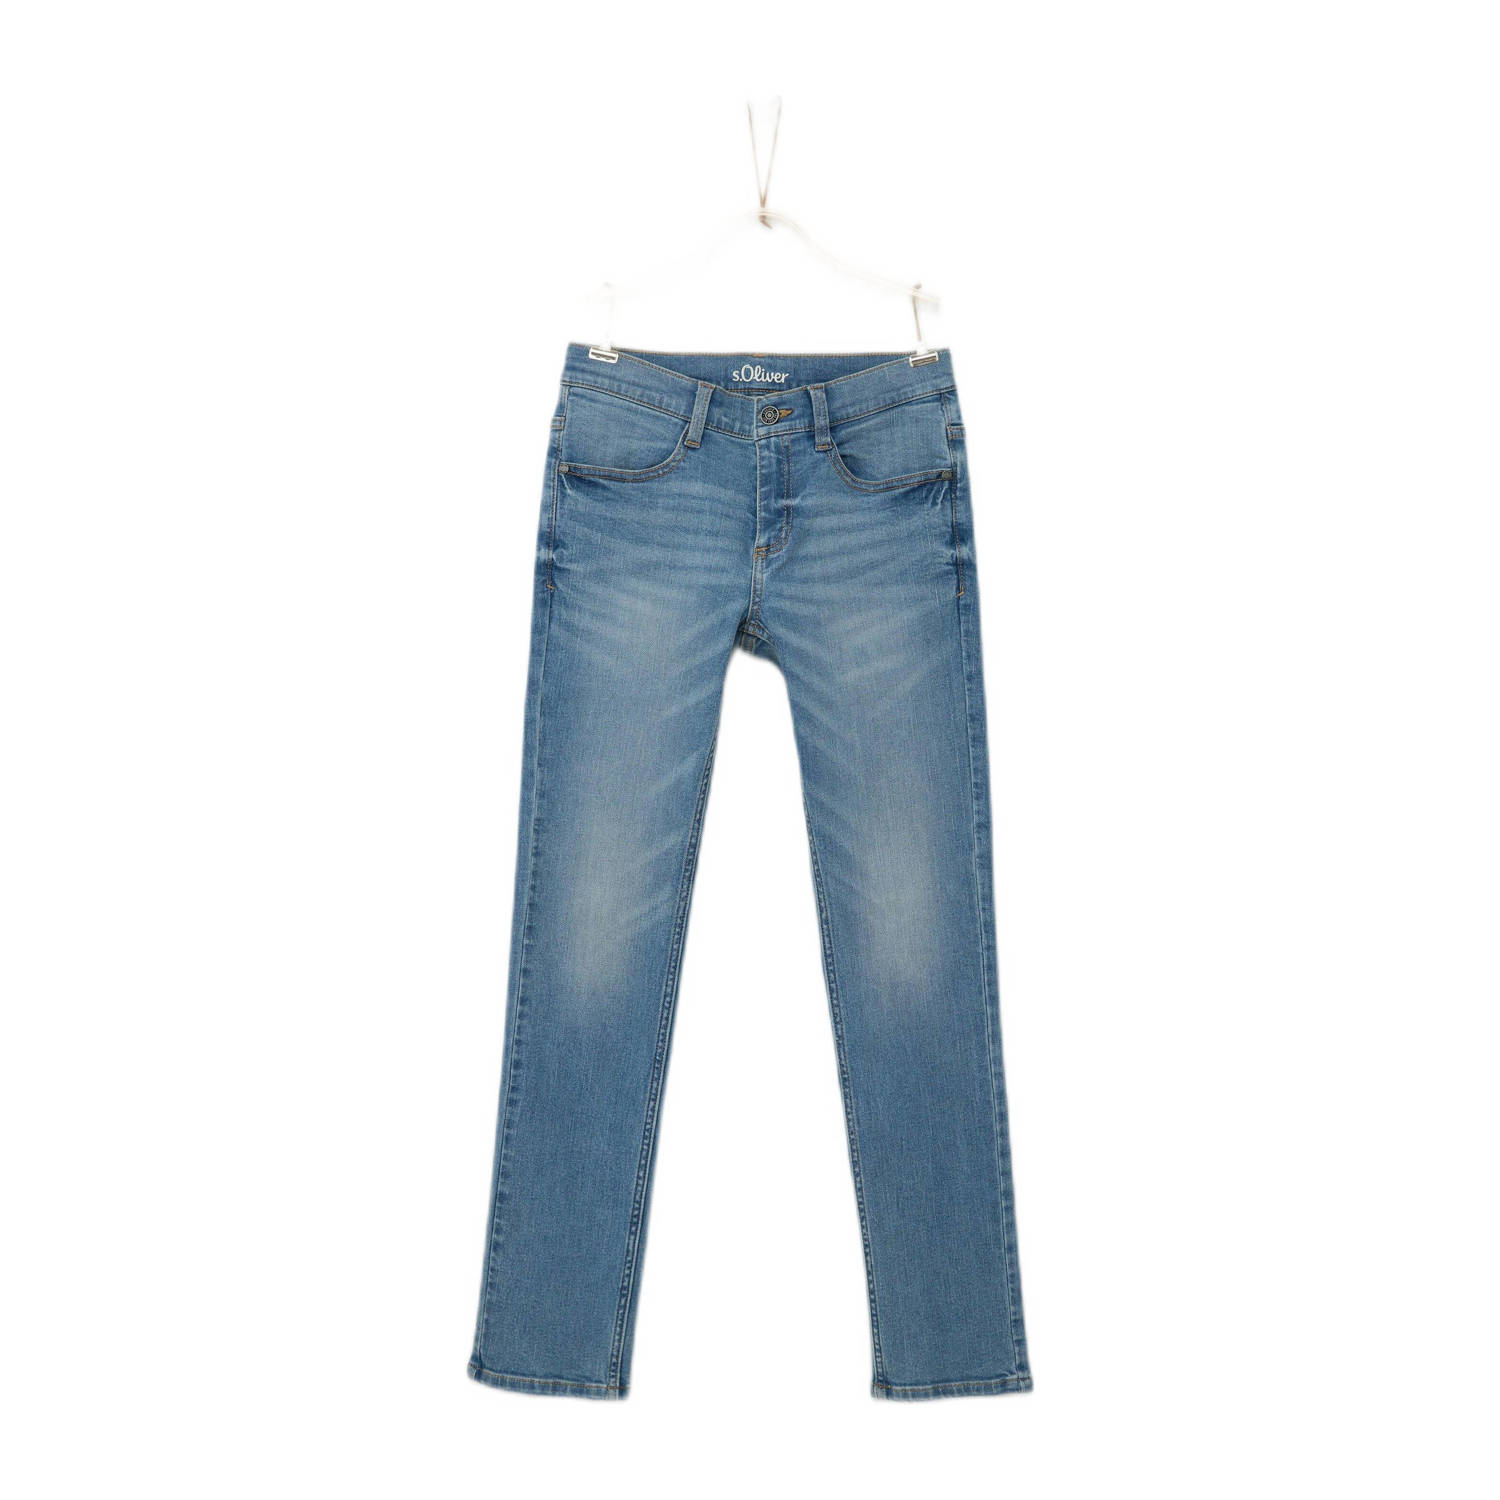 S.Oliver regular fit jeans light blue denim Blauw 134